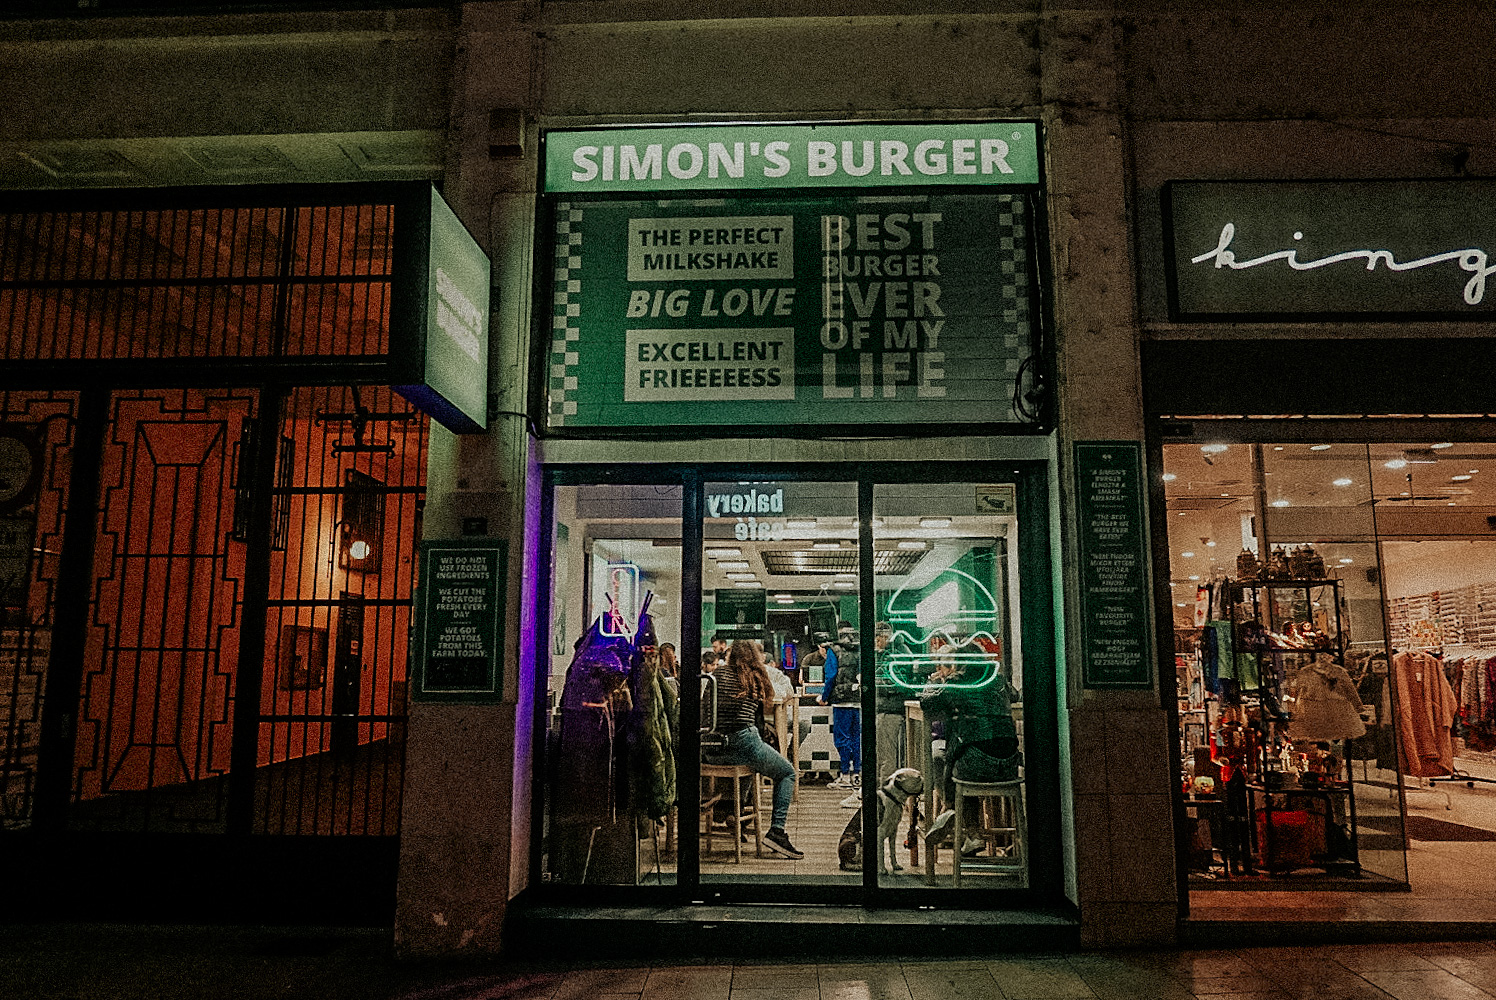 Simon’s Burger – A Z generációs burgerpont, amiről nem szerettünk volna írni